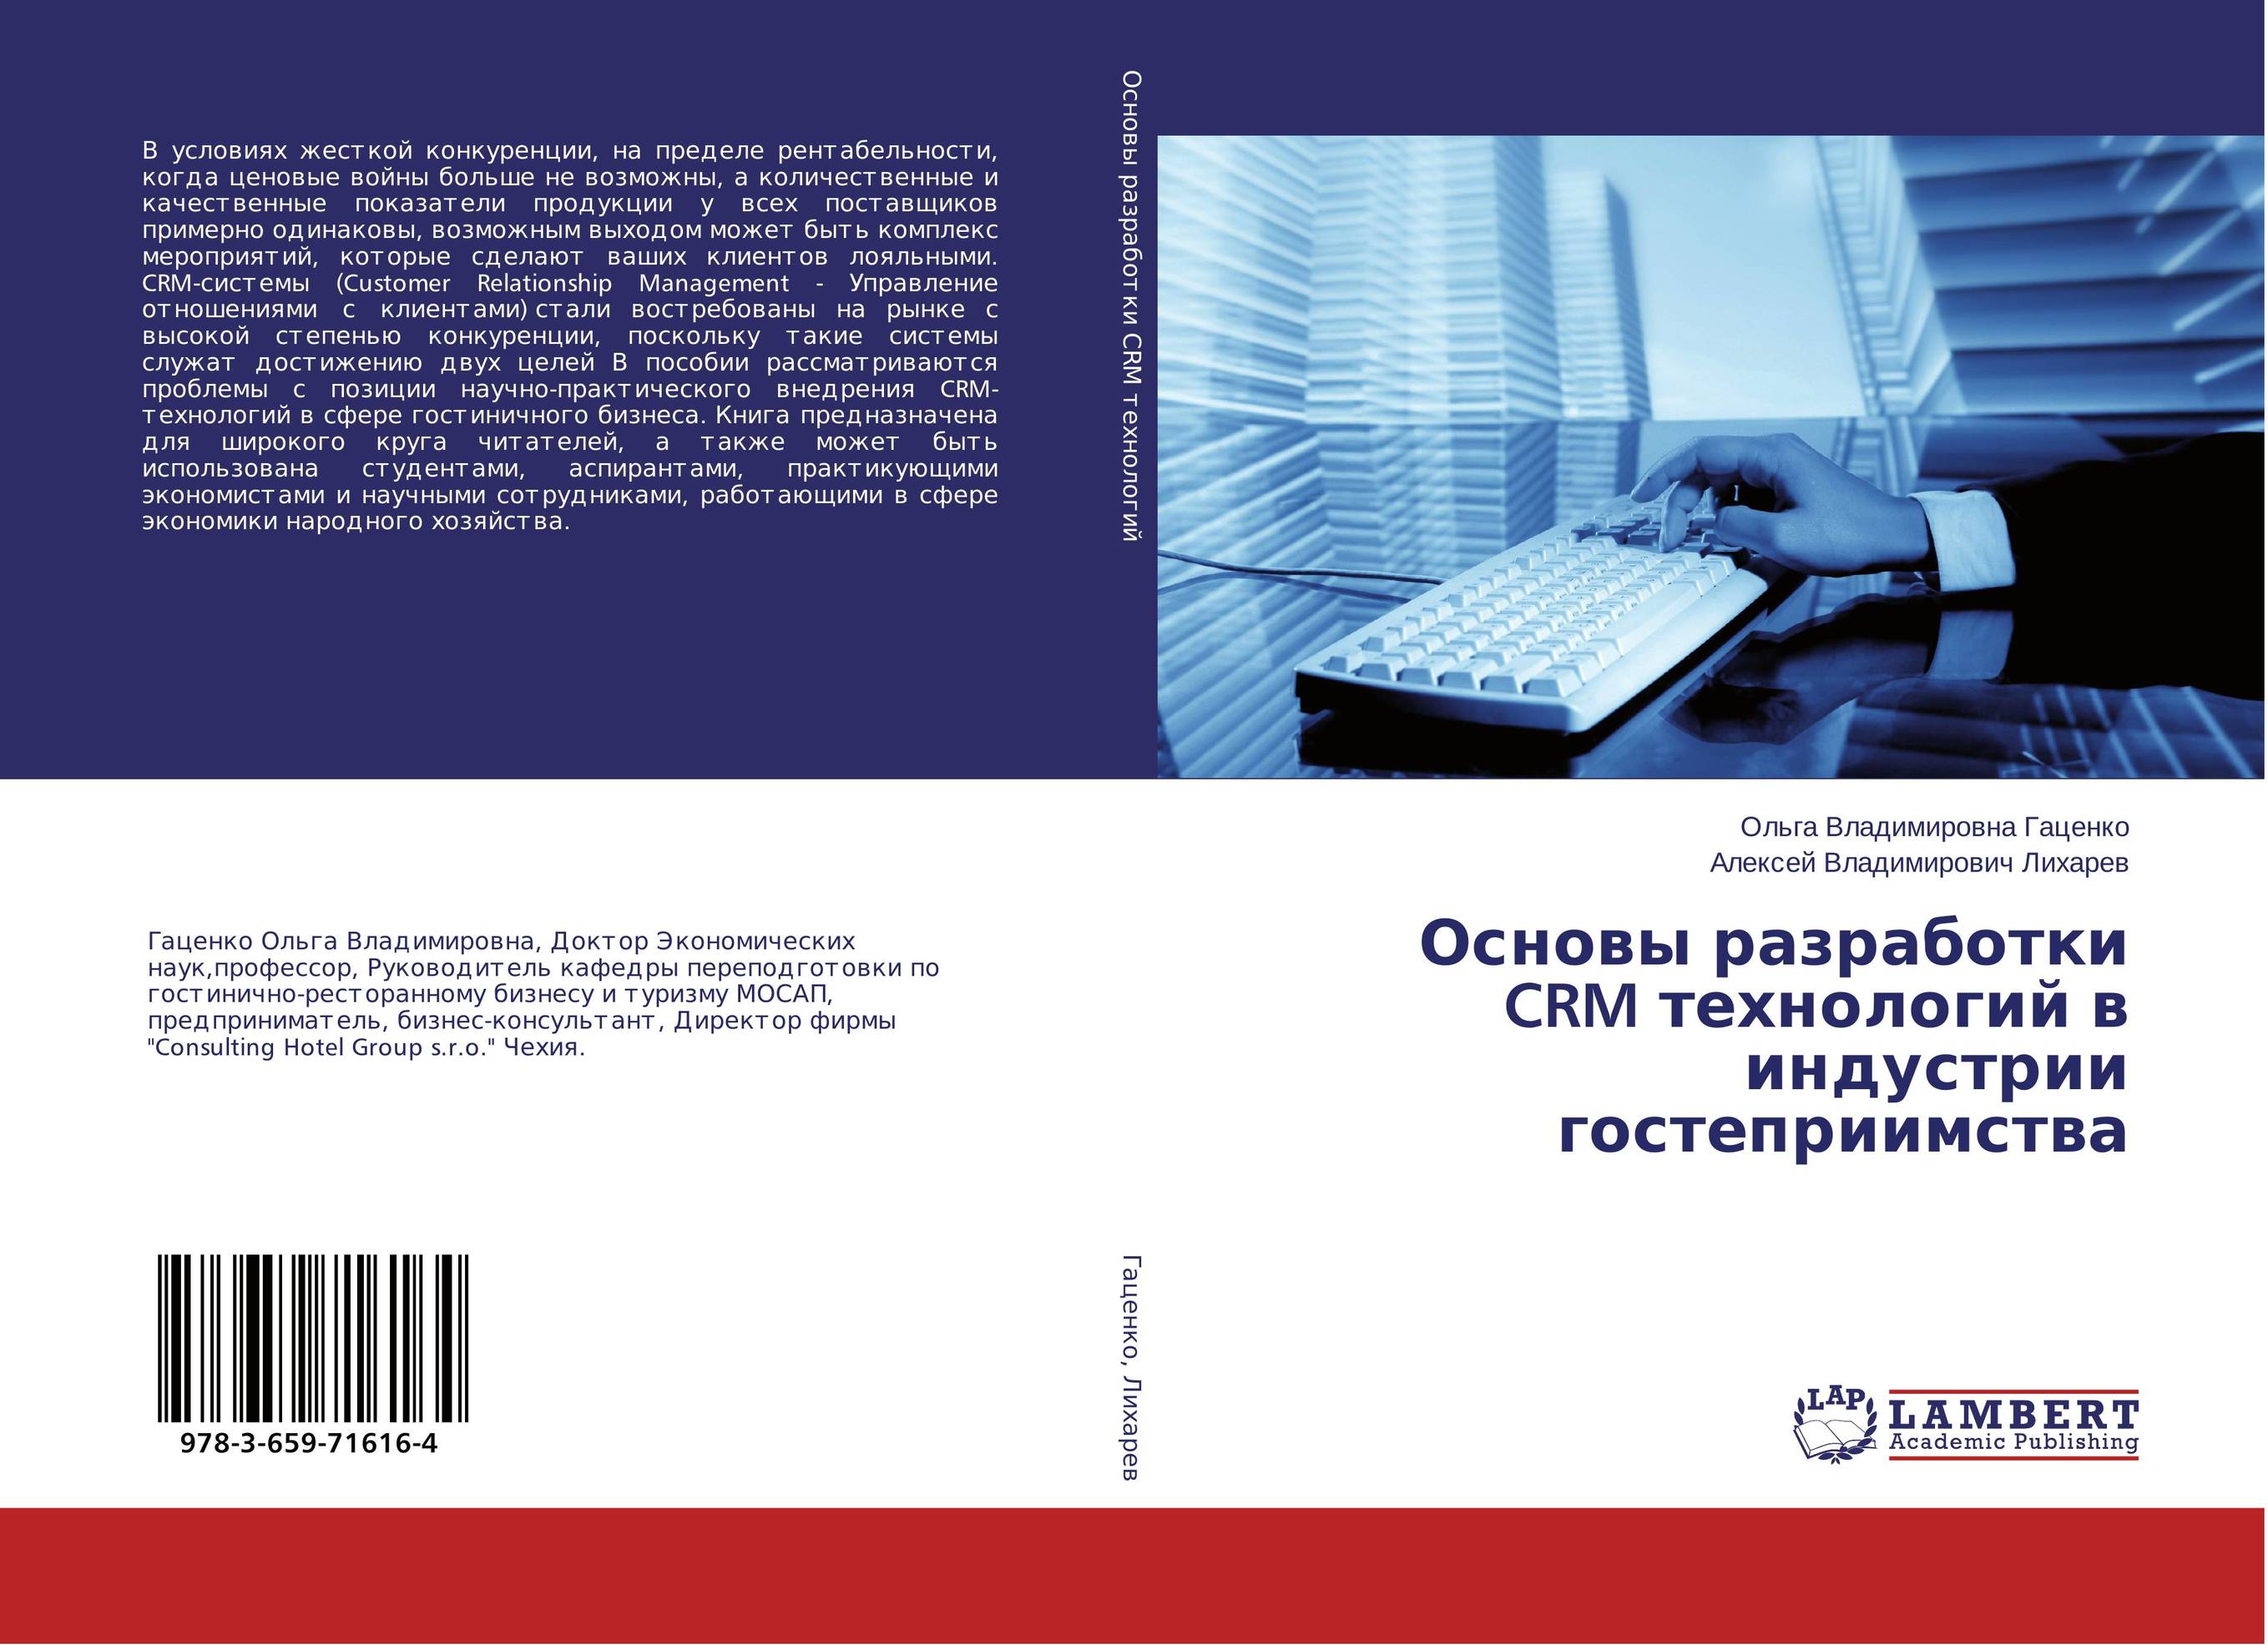 
        Основы разработки CRM технологий в индустрии гостеприимства..
      